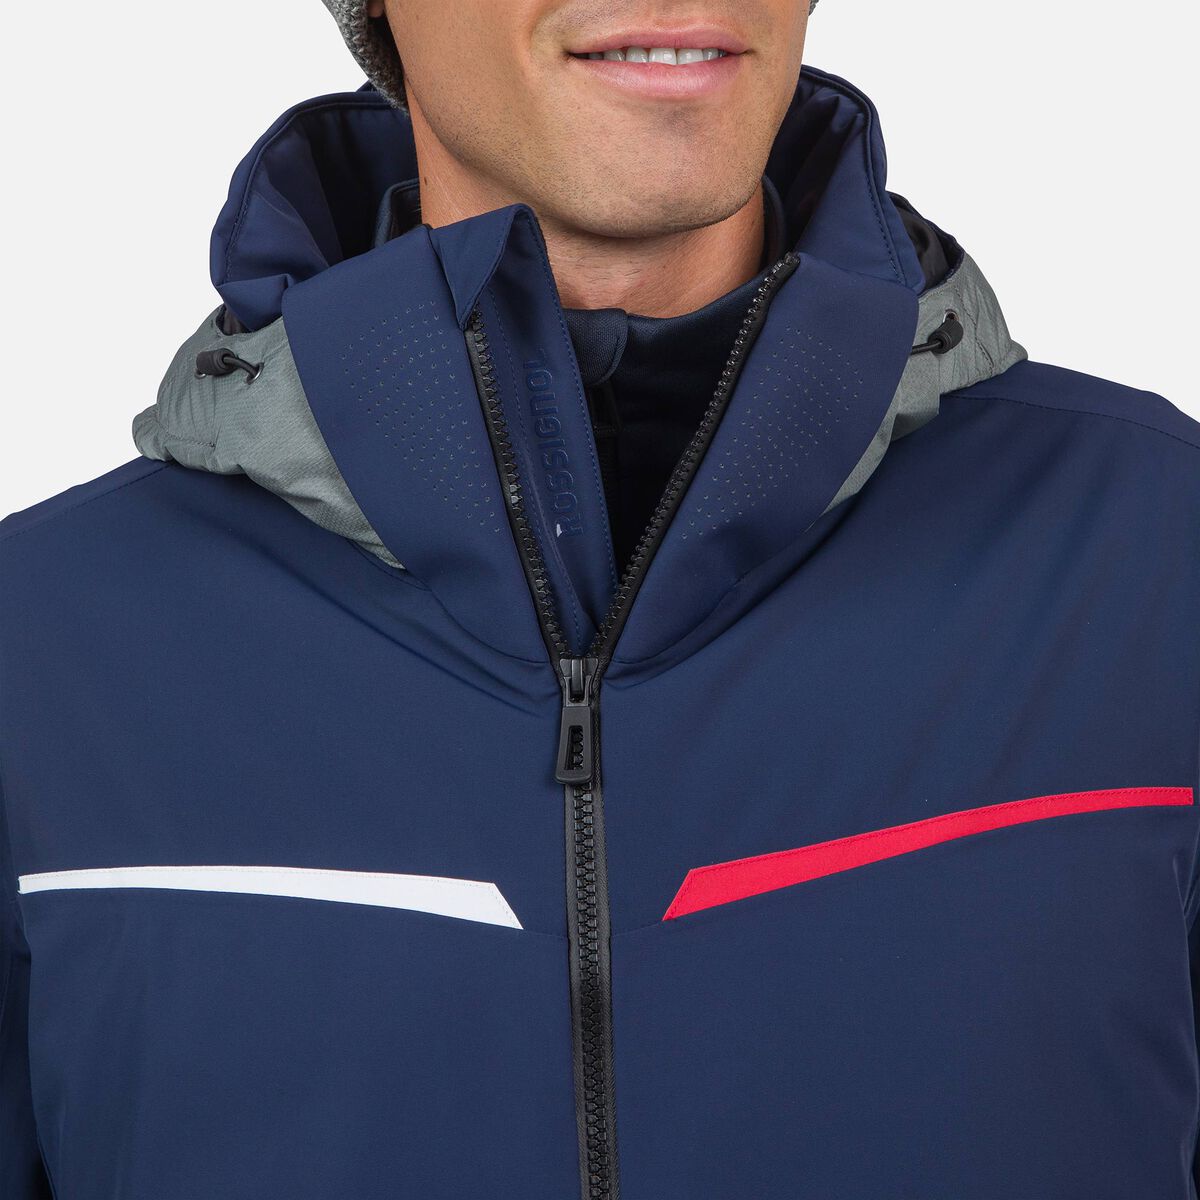 Men's Strato STR Ski Jacket